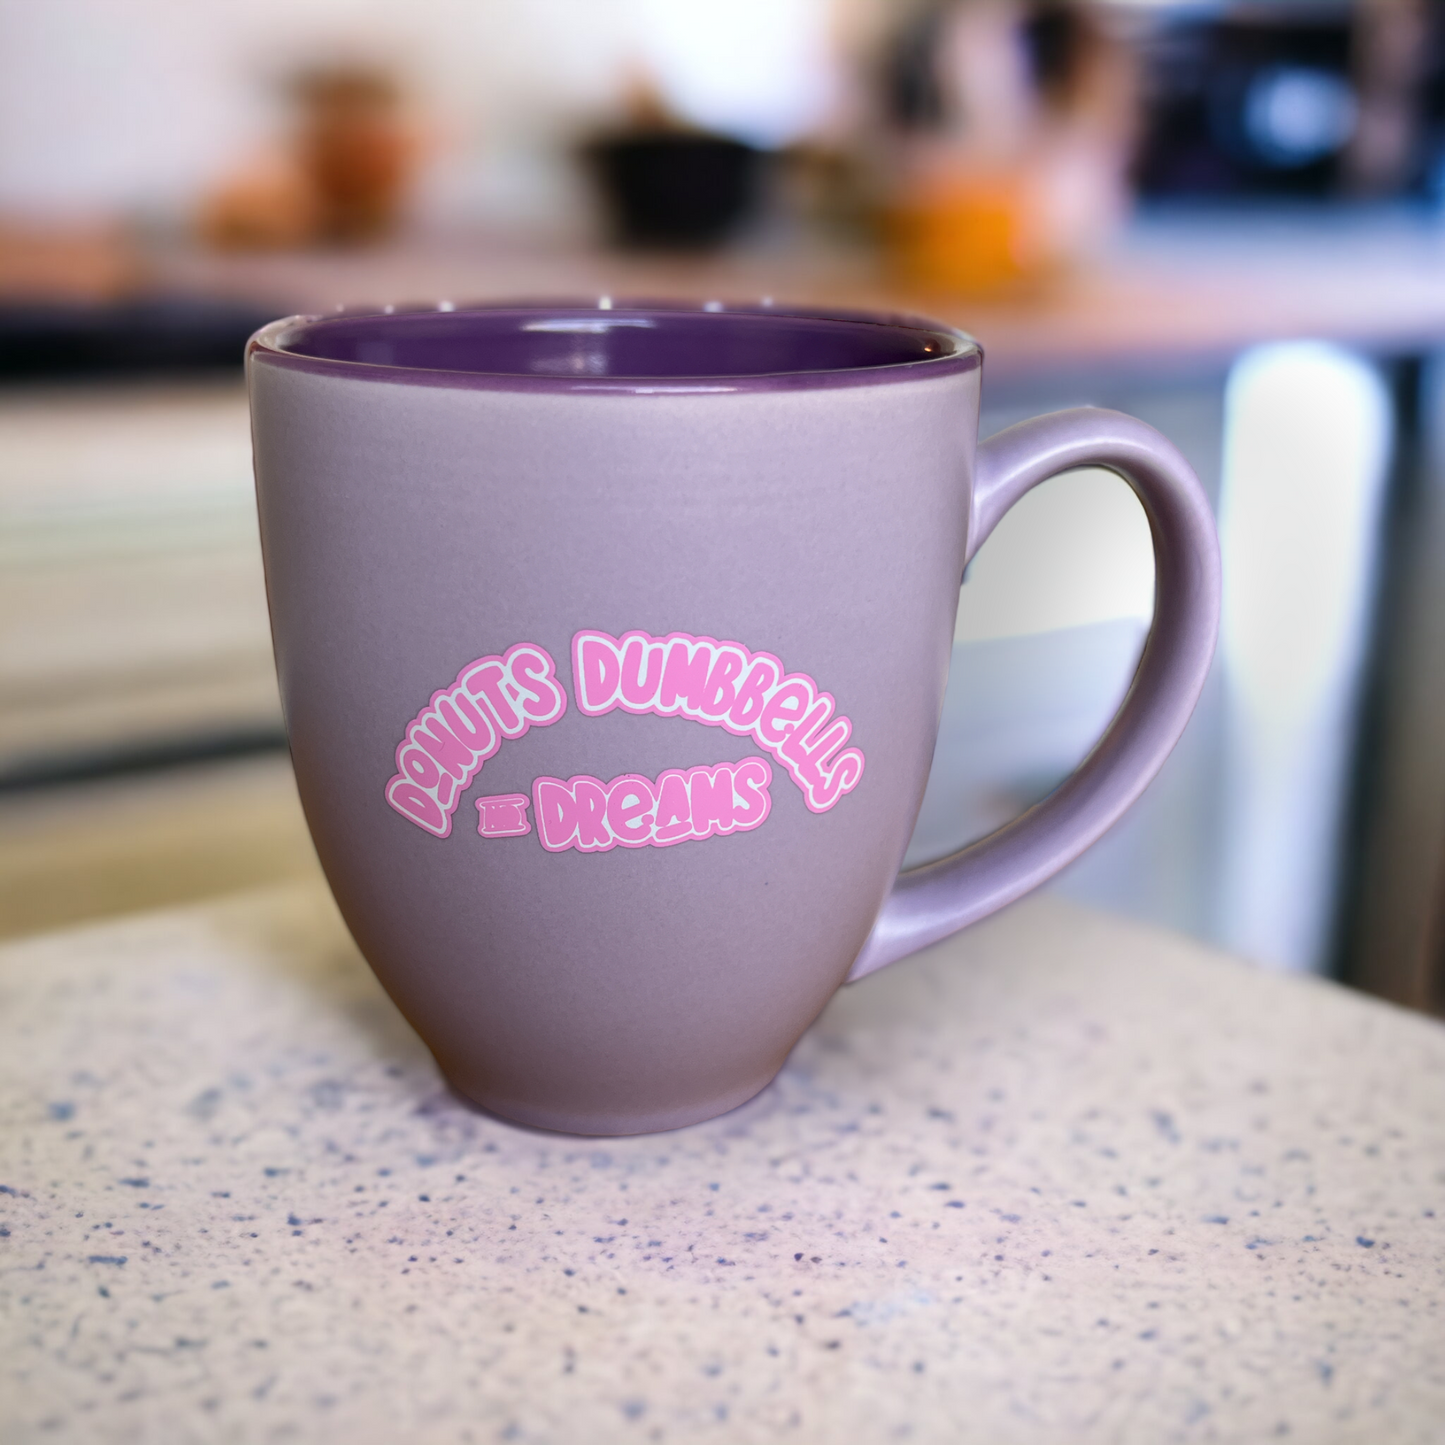 Donuts Dumbbells and Dreams - Coffee Mug